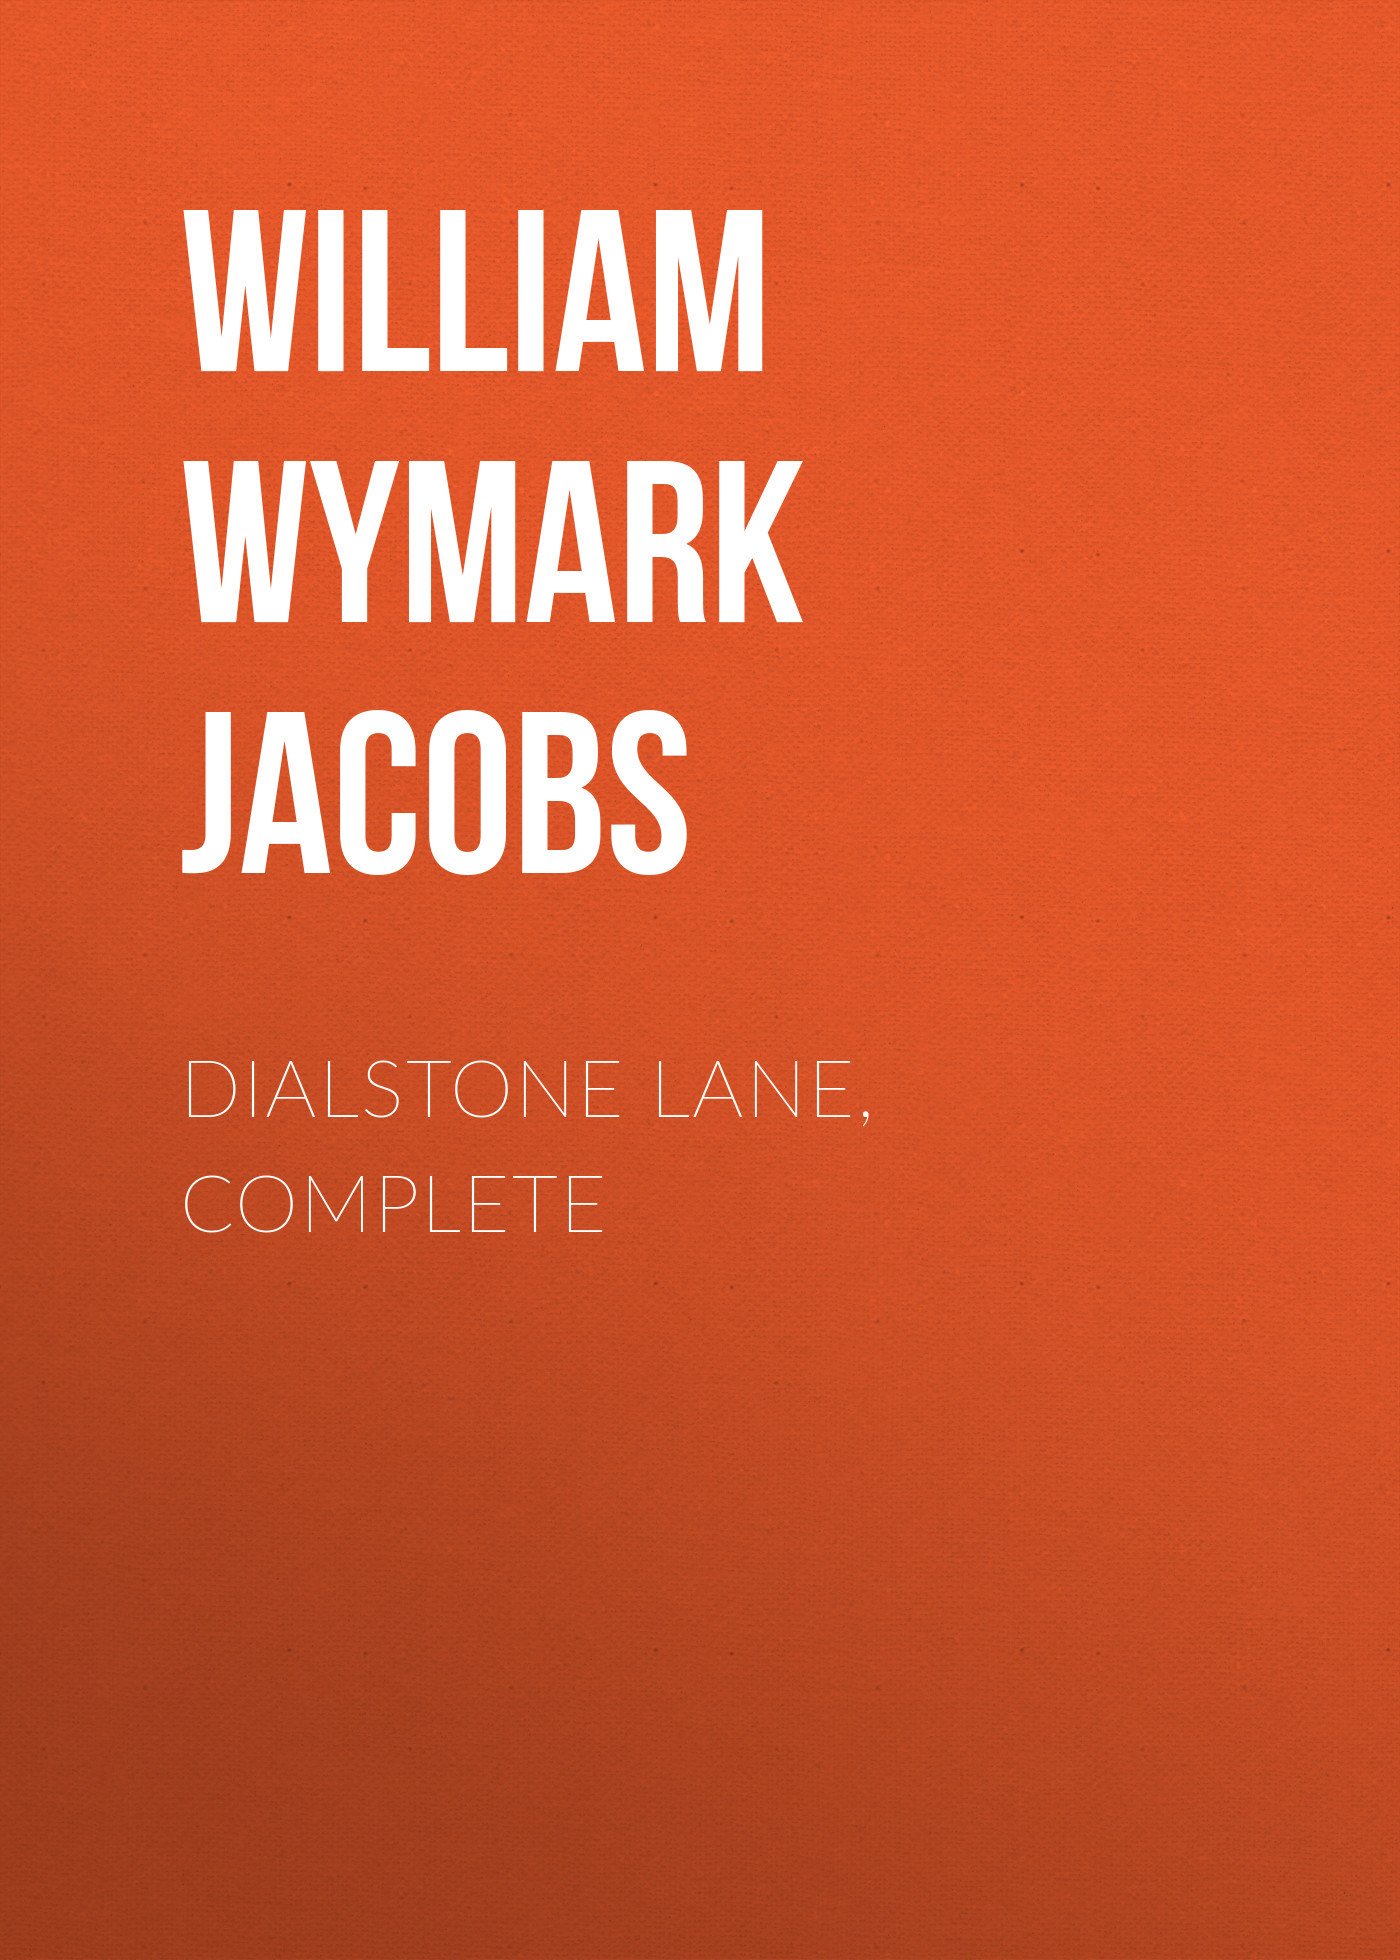 Книга Dialstone Lane, Complete из серии , созданная William Wymark Jacobs, может относится к жанру Книги о Путешествиях, Зарубежная старинная литература, Зарубежная классика. Стоимость электронной книги Dialstone Lane, Complete с идентификатором 34843638 составляет 0 руб.